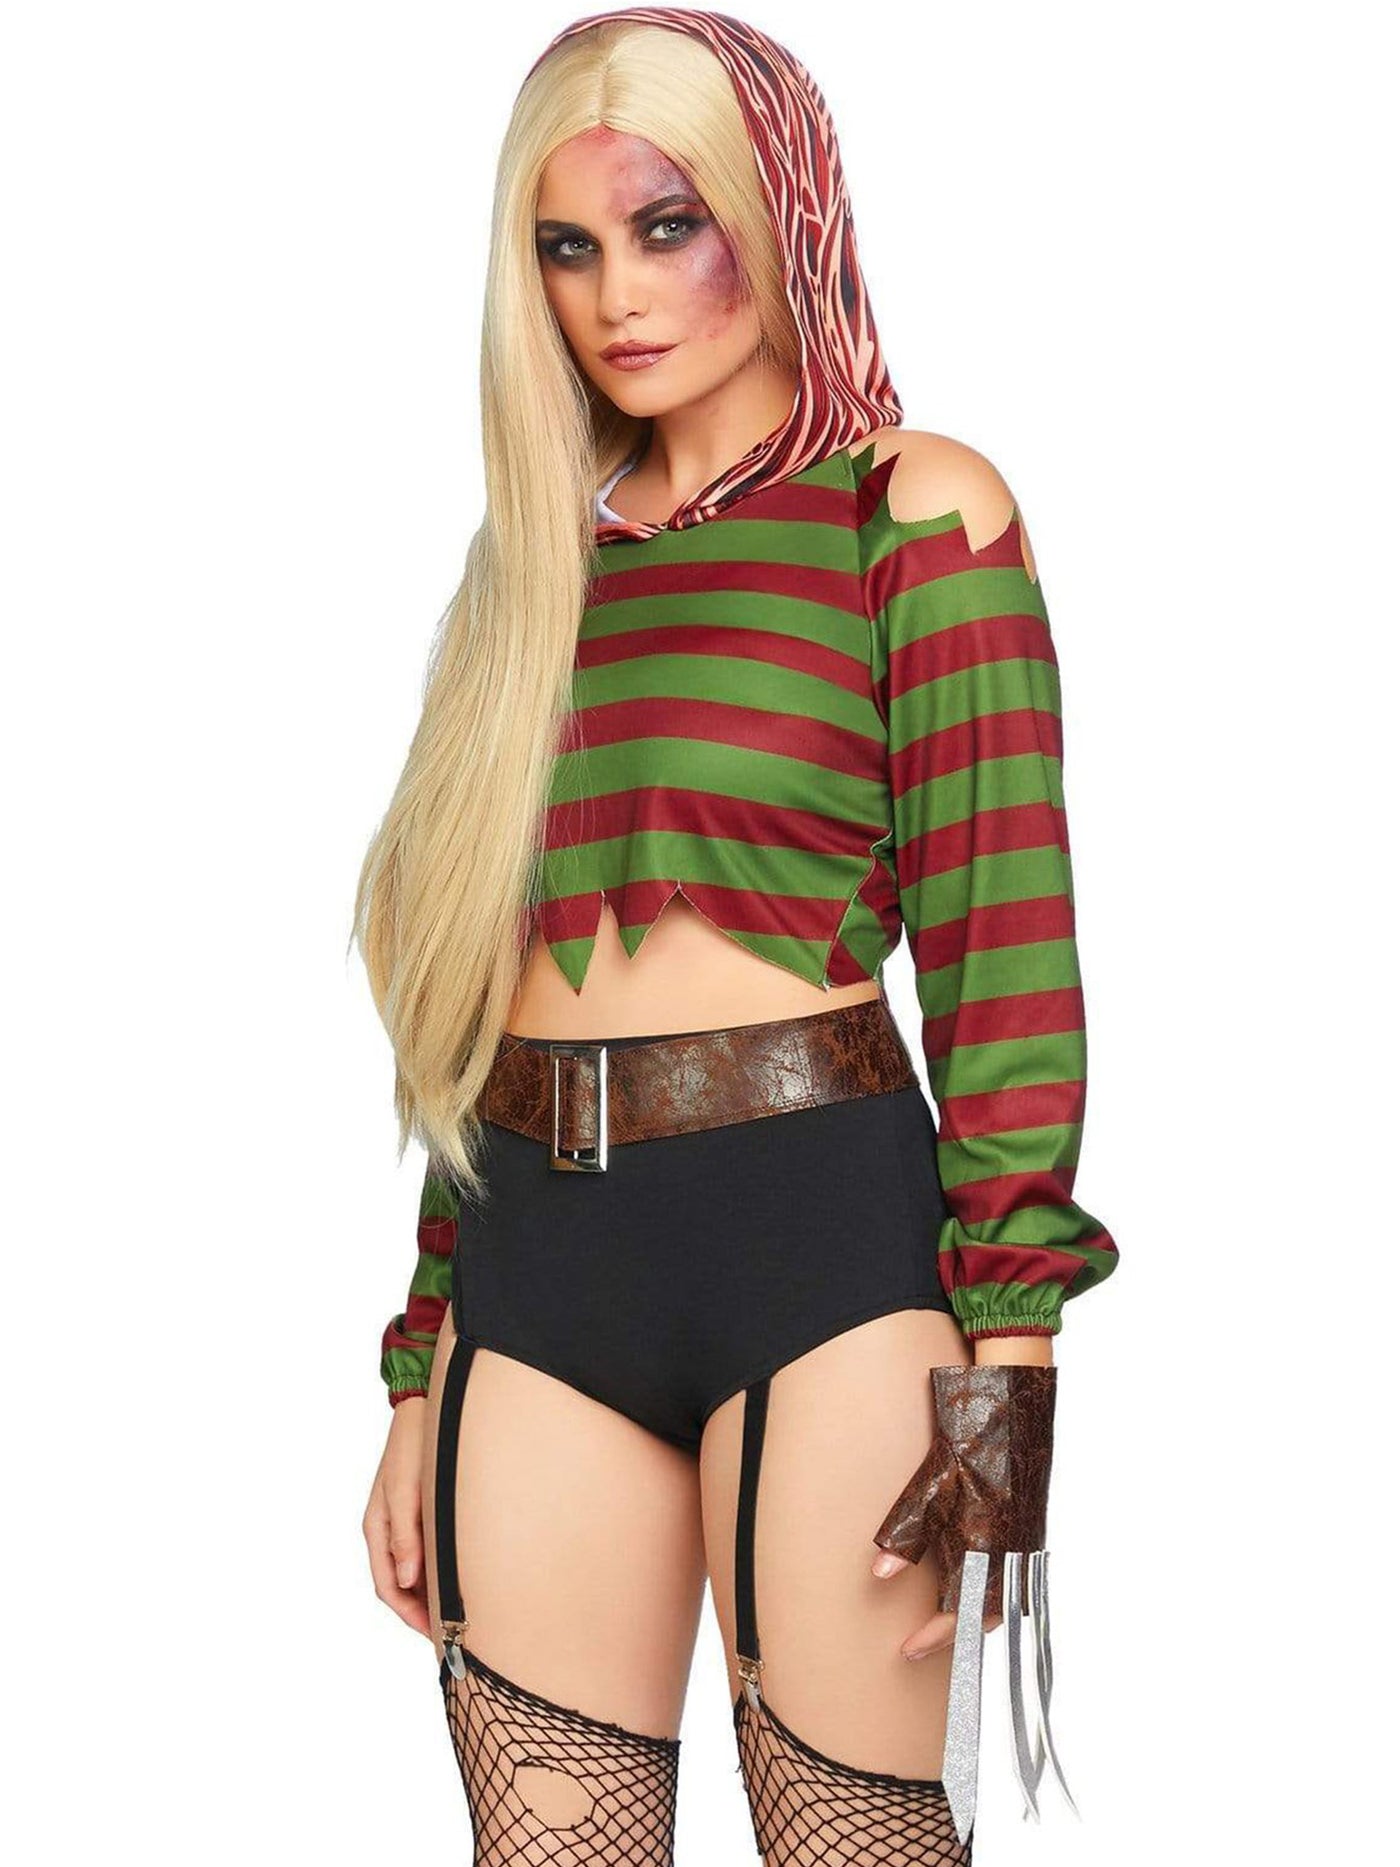 Womens Freddy Krueger Dream Killer Halloween Costume